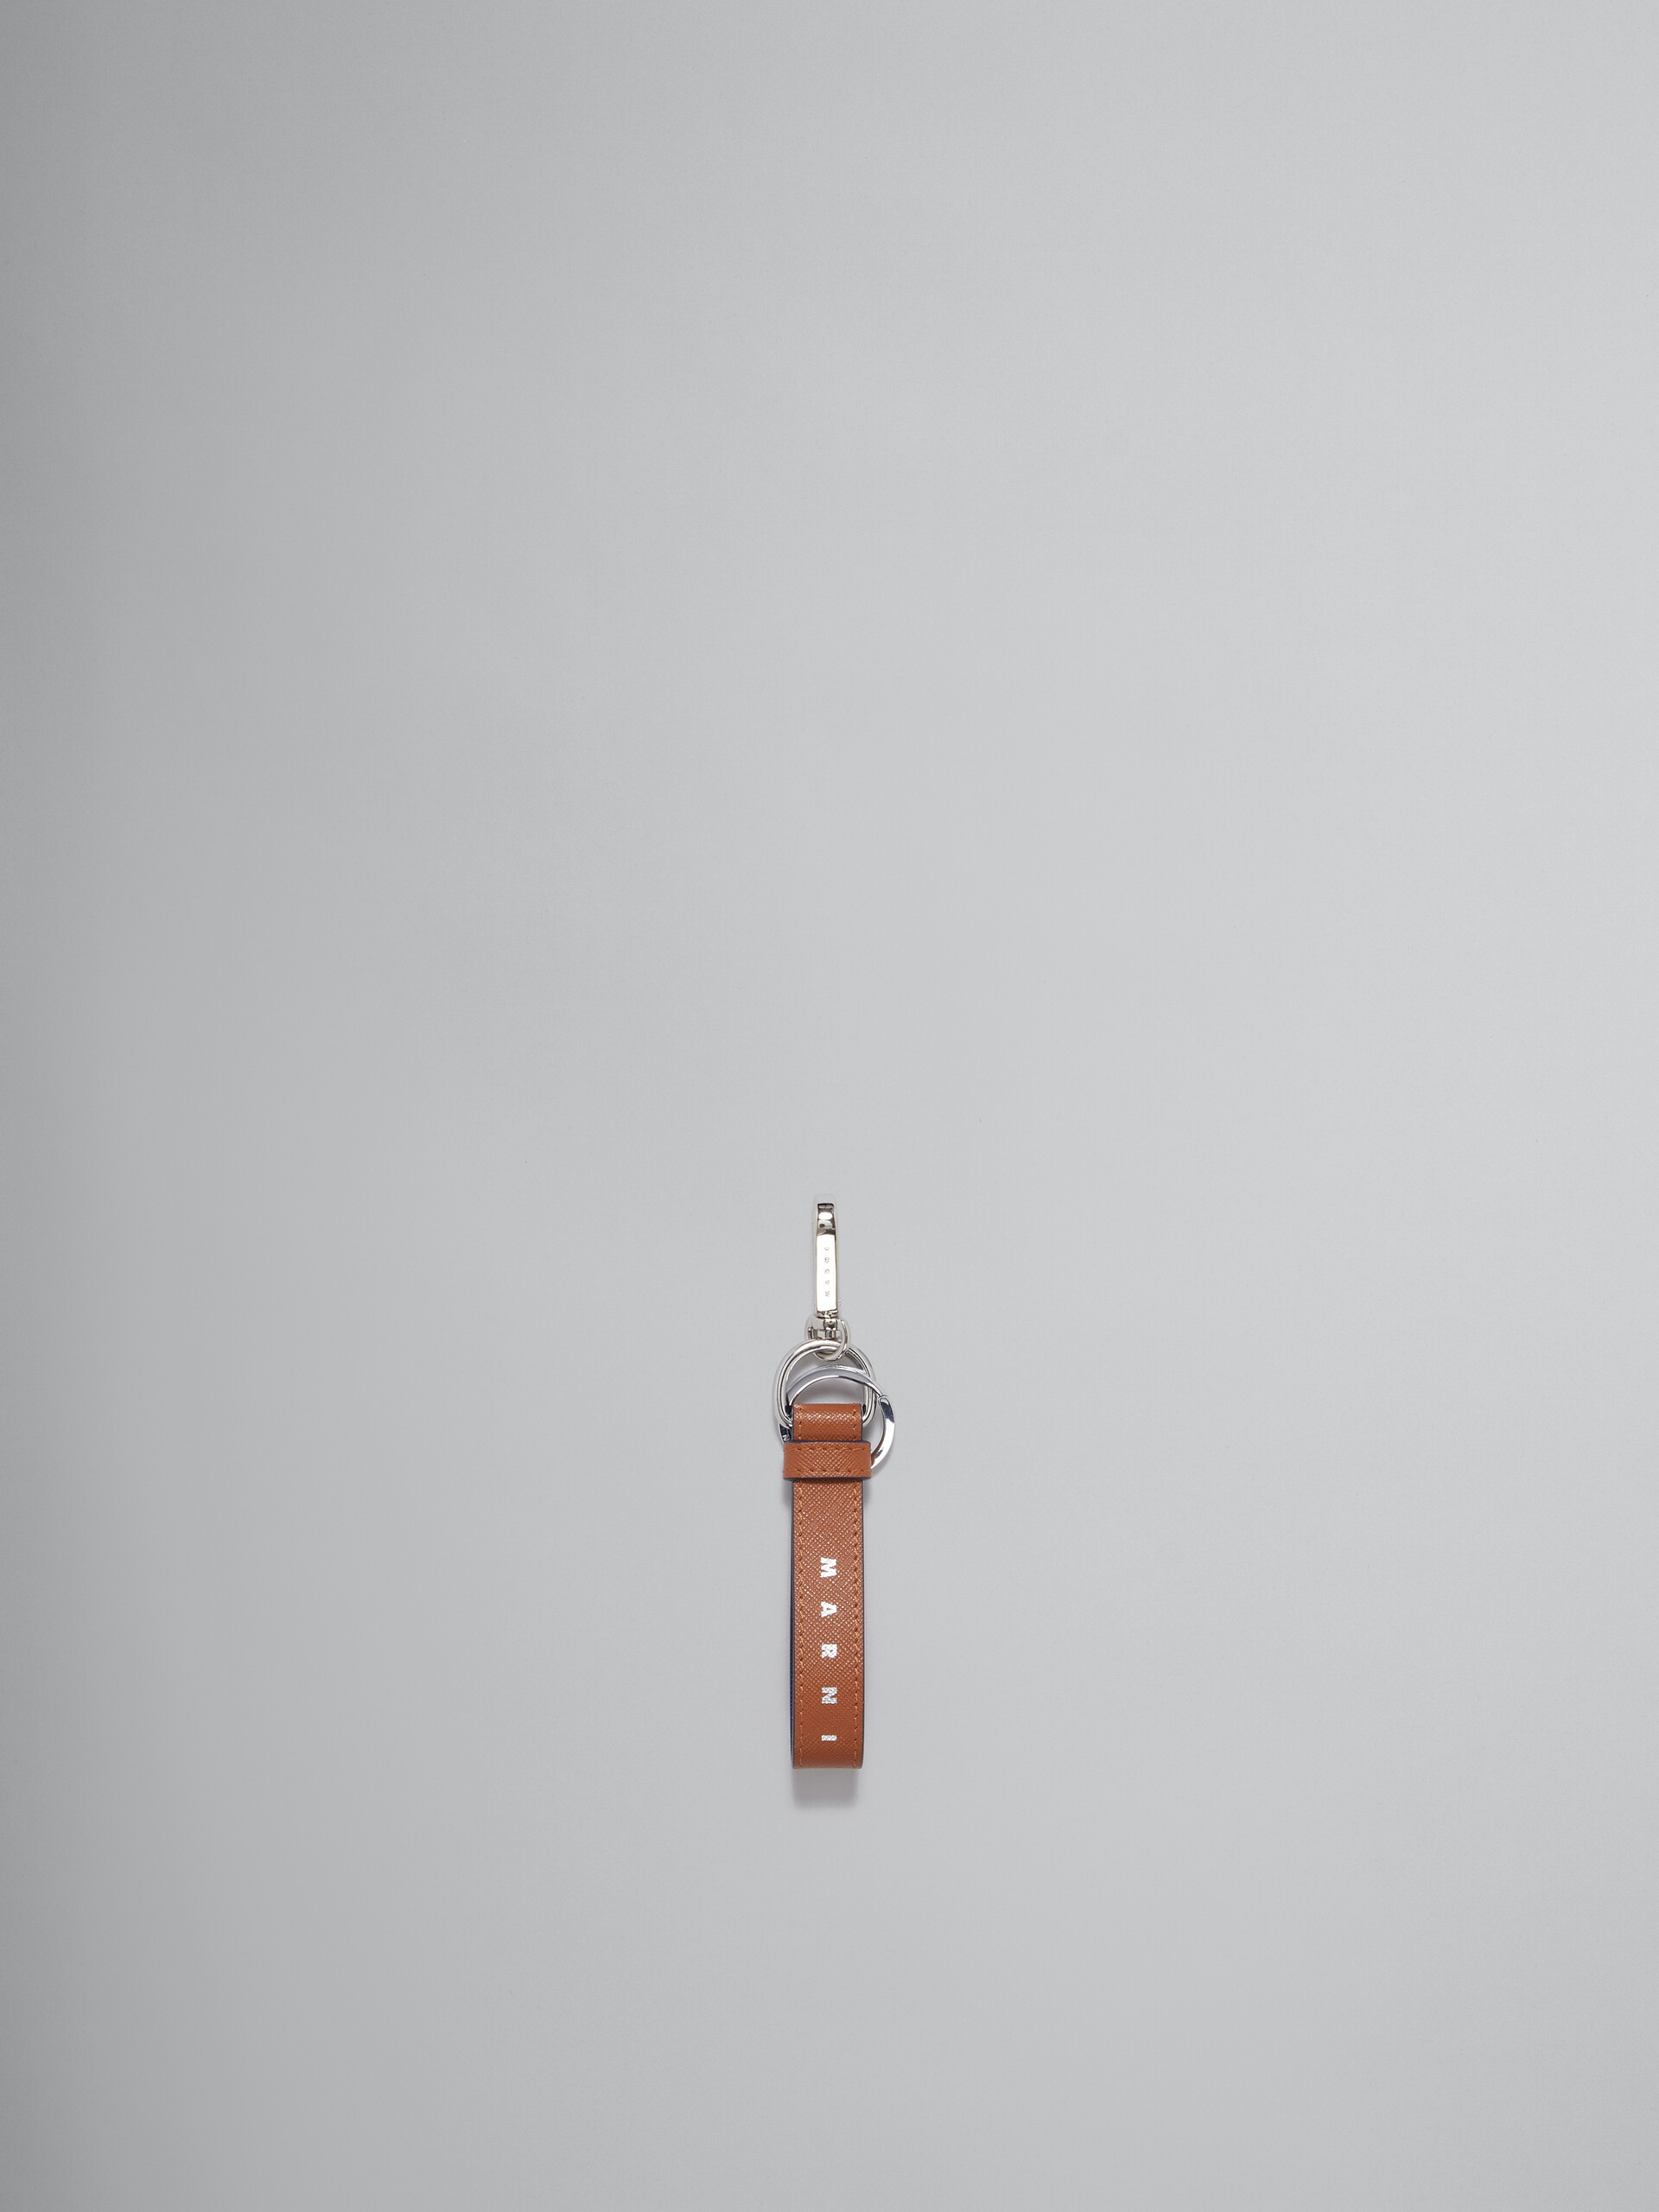 Schlüsselanhänger aus Saffiano-Leder in Dunkelblau und Grün - Schlüsseletui - Image 1